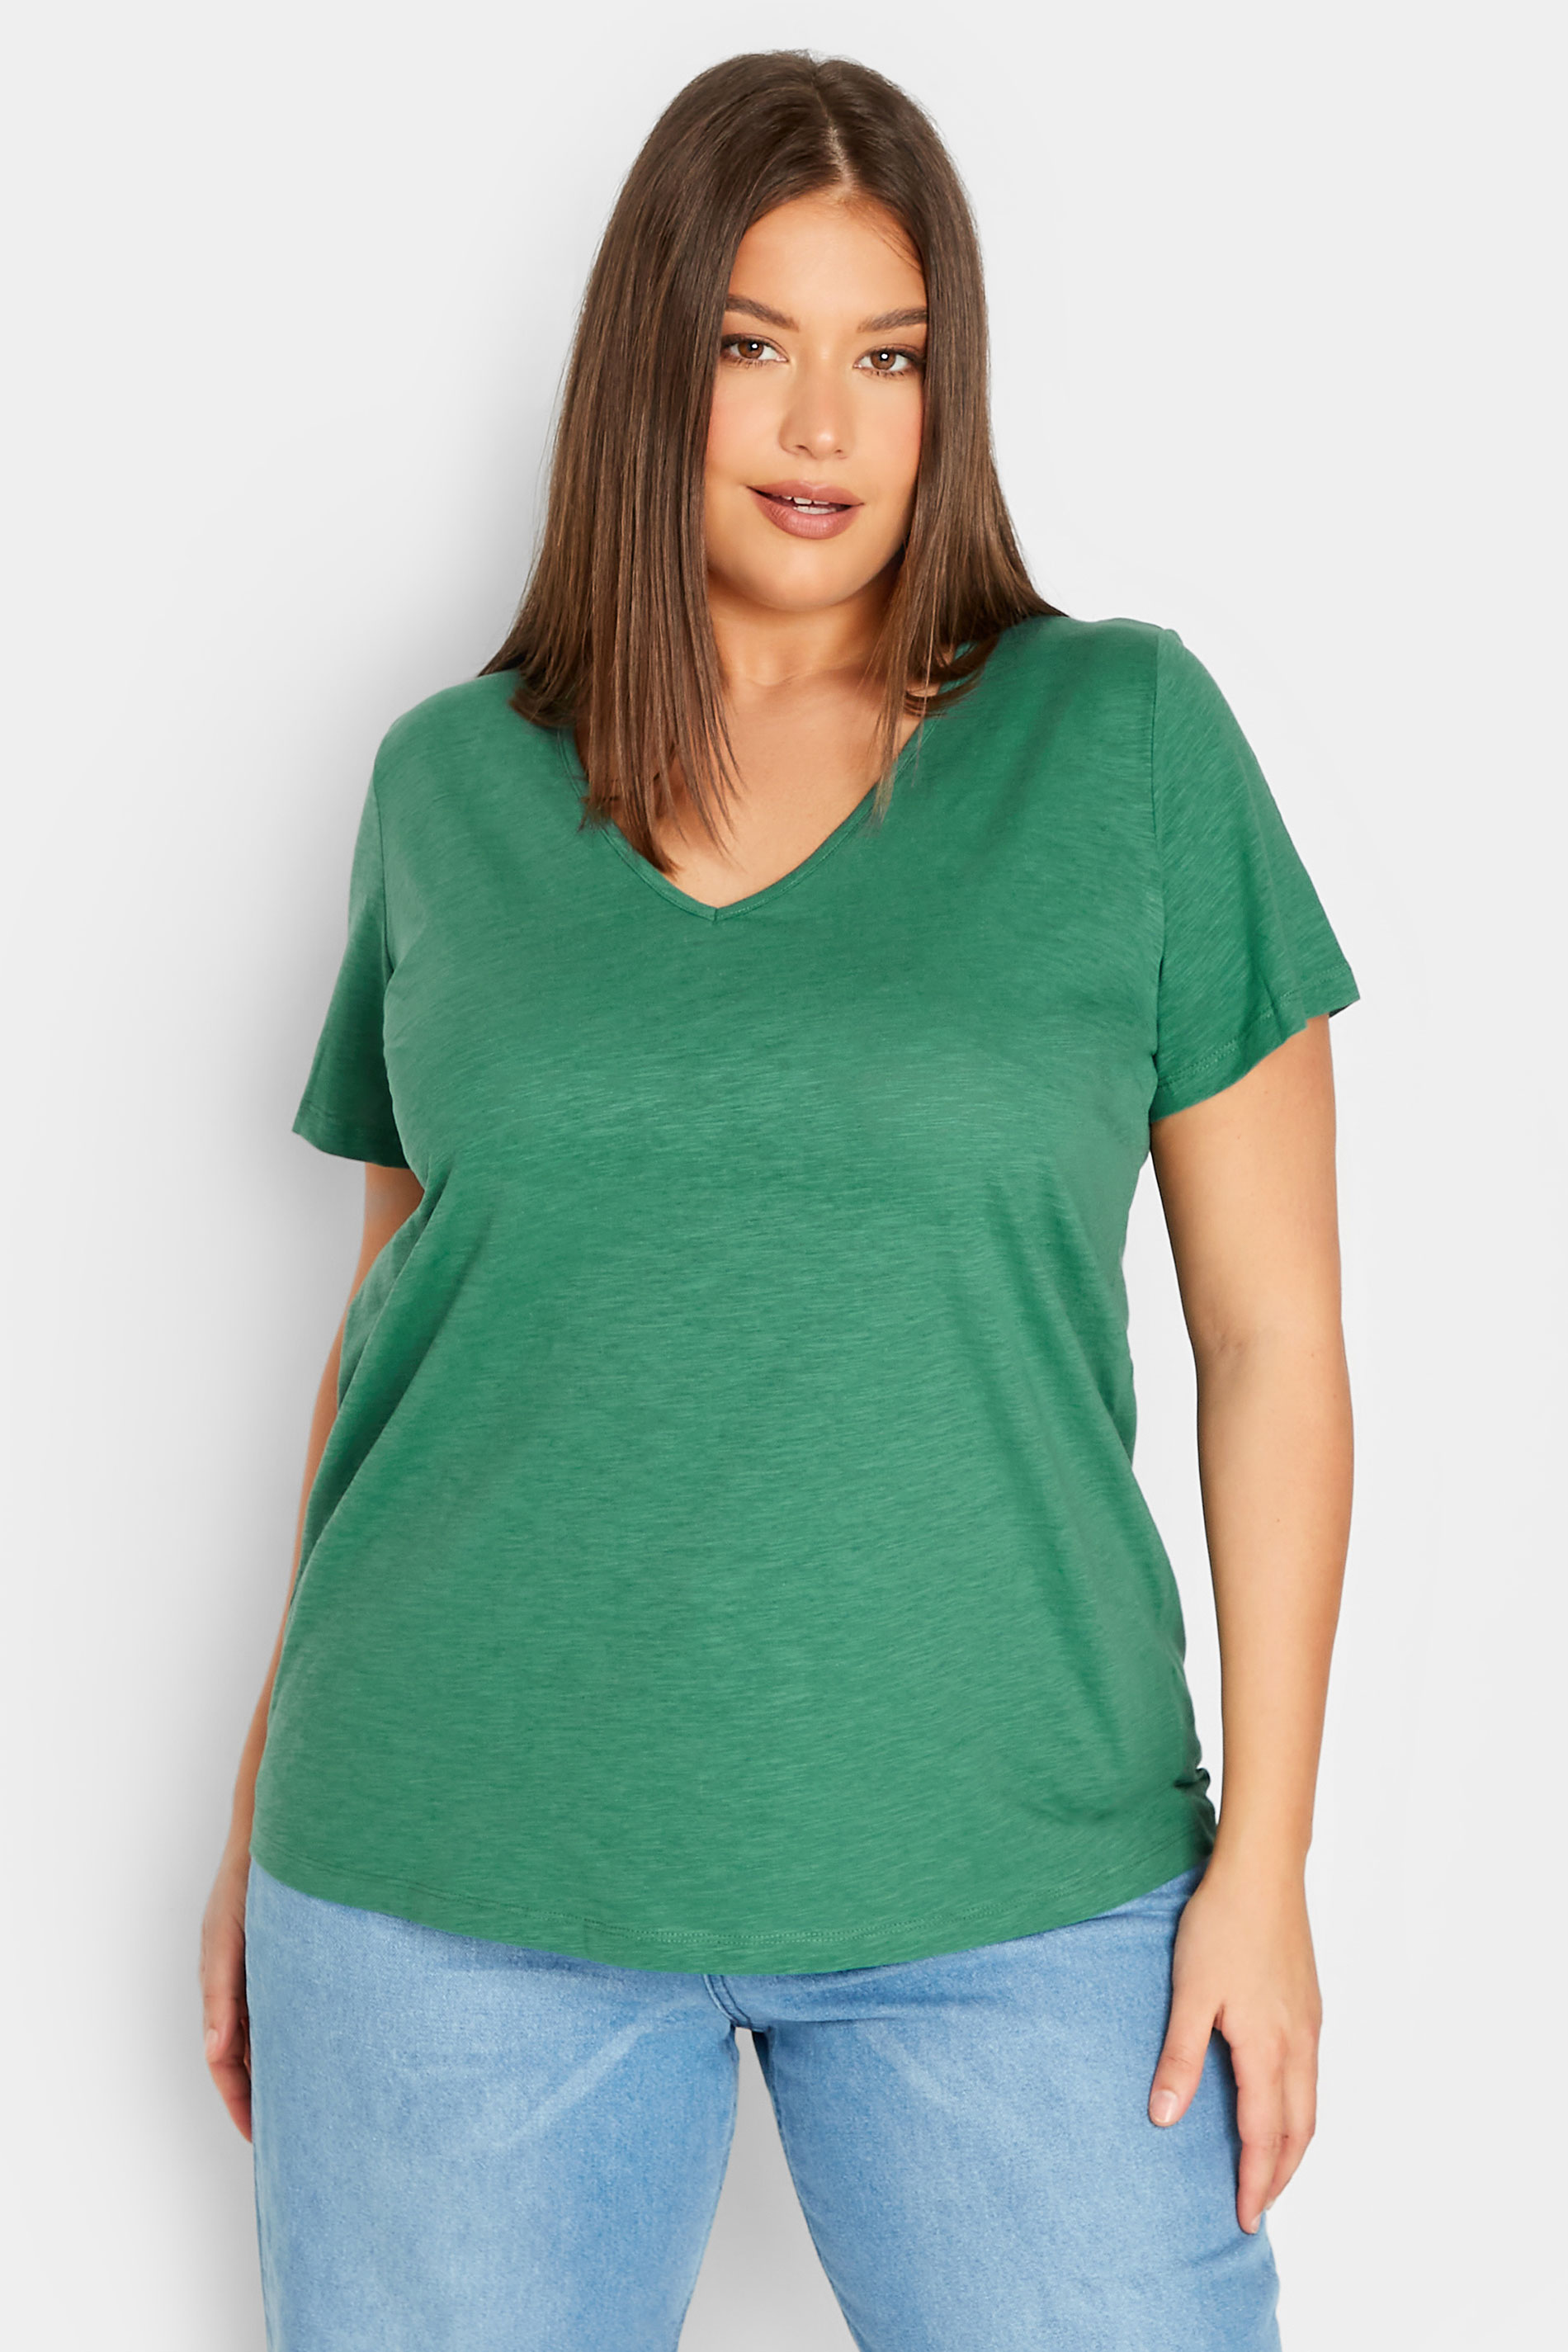 LTS Tall Women's Green Short Sleeve Cotton T-Shirt | Long Tall Sally  1